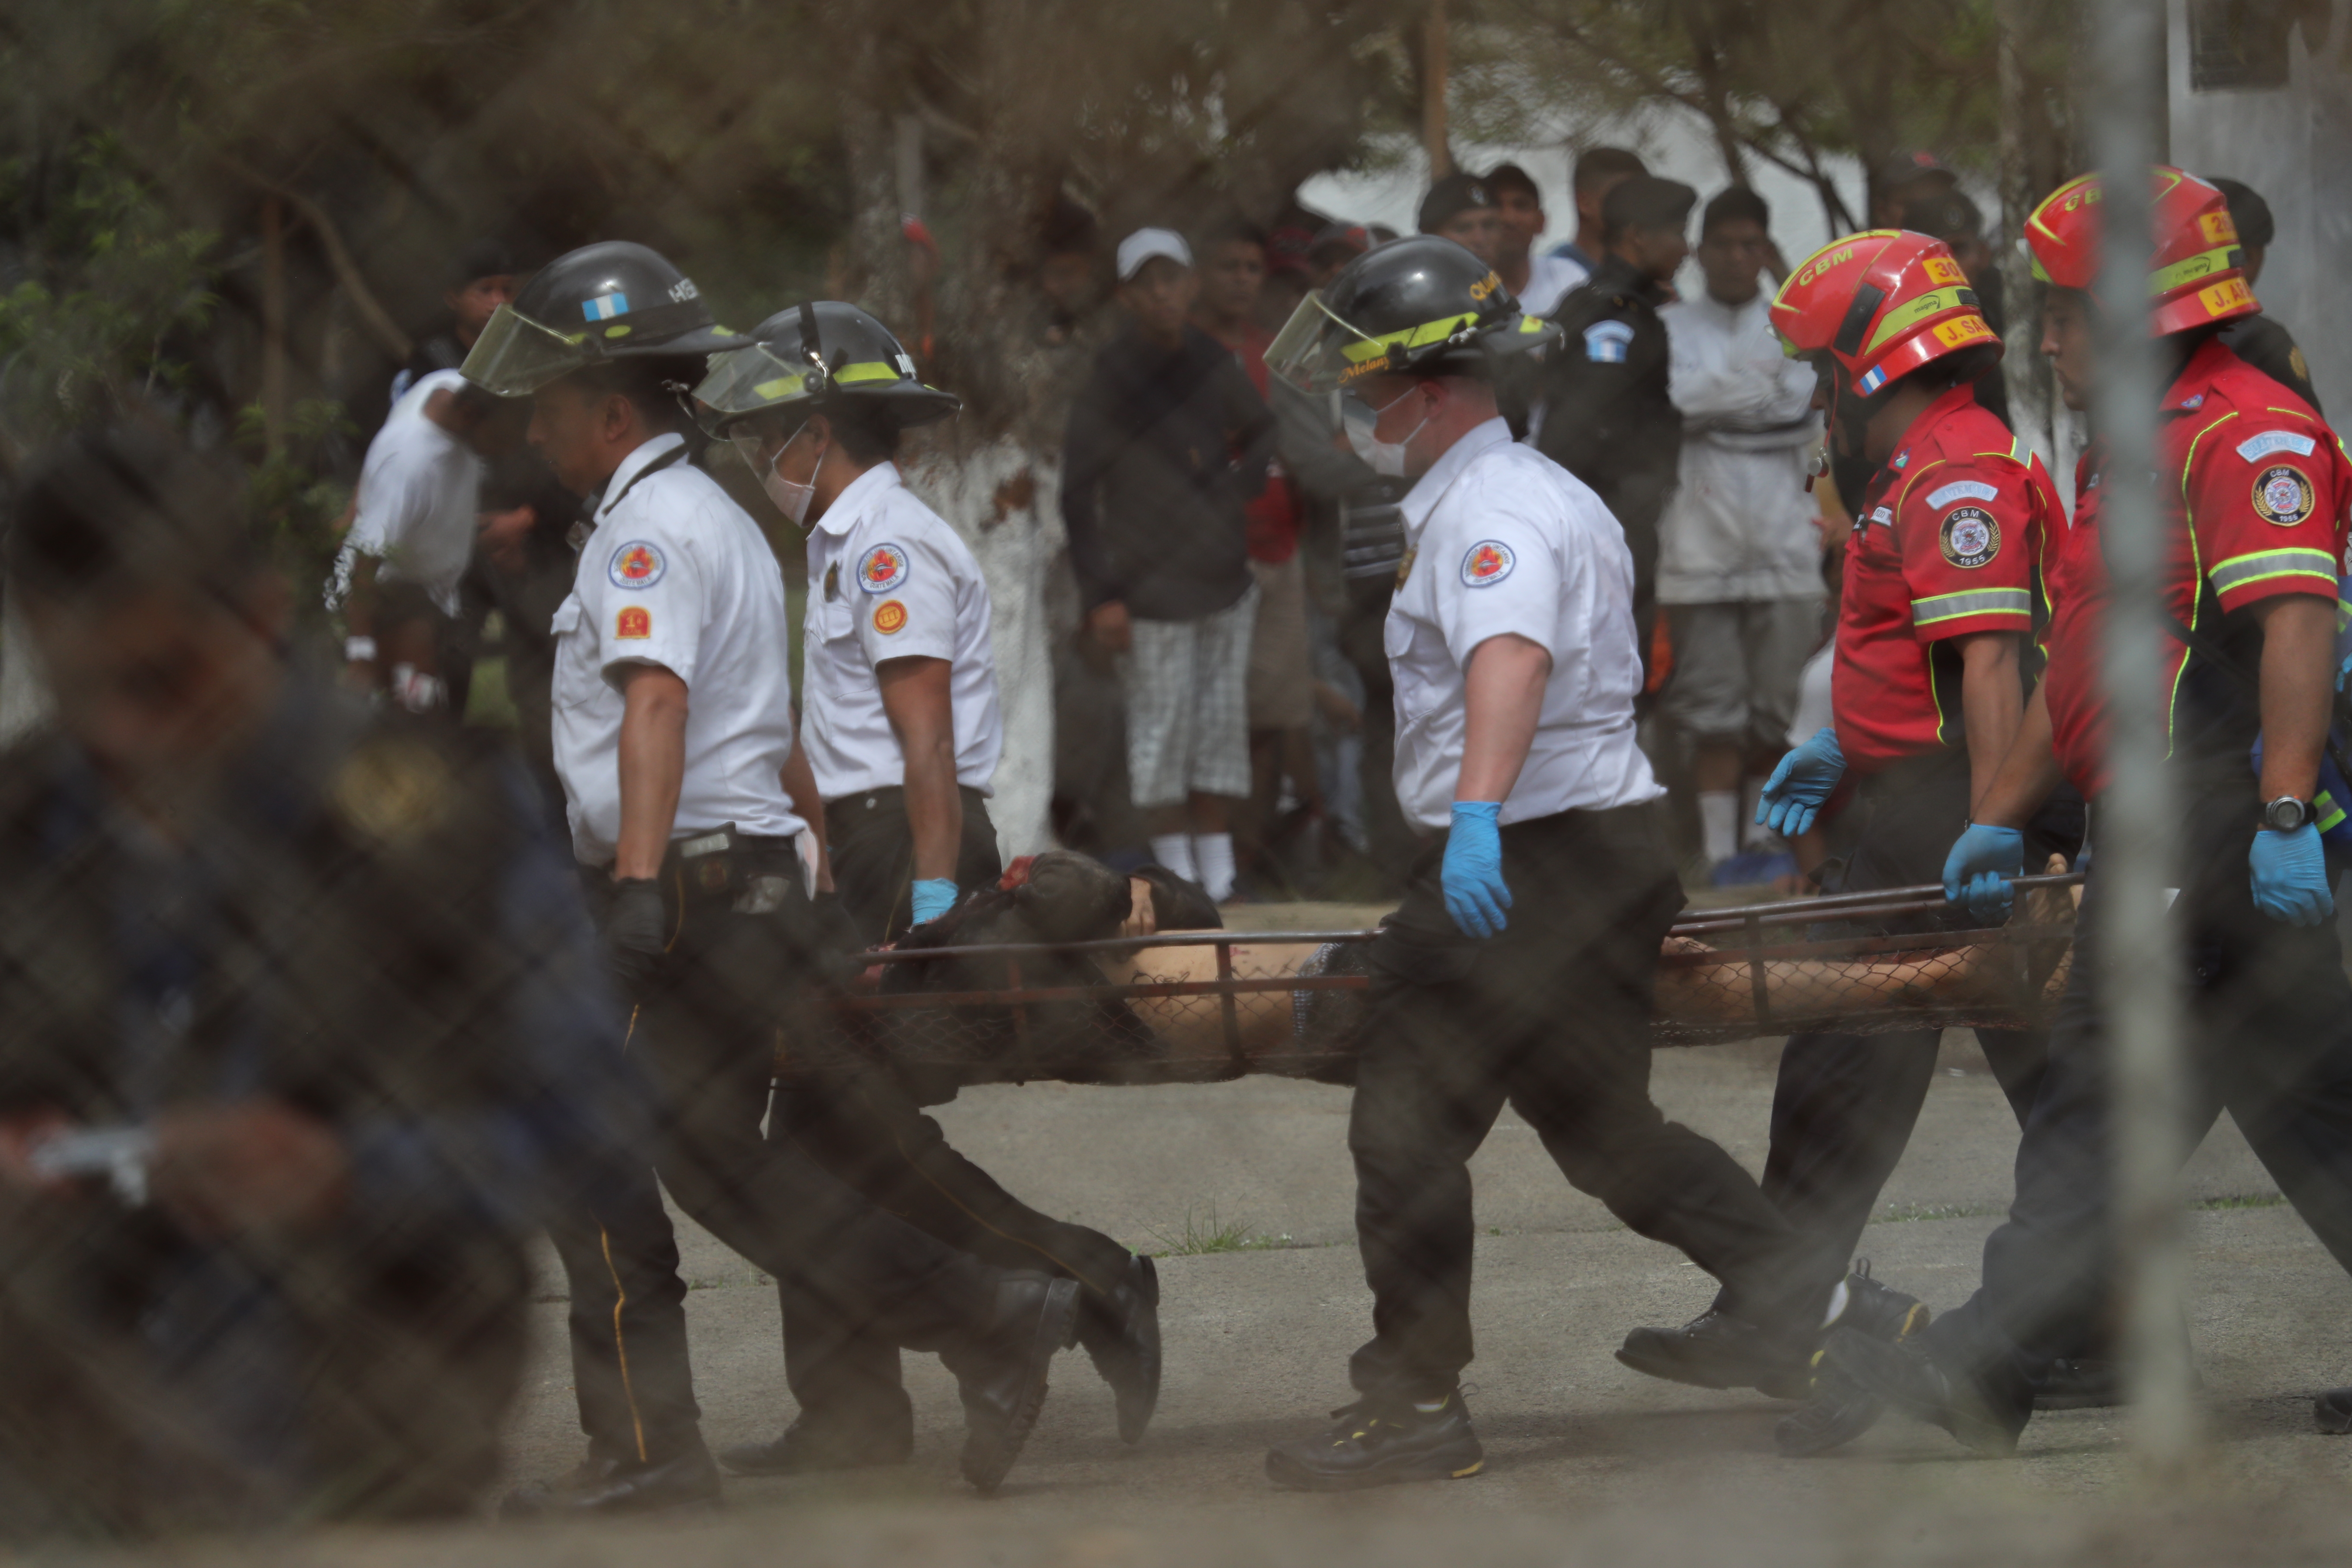 Un grupo de reos armados atacó en Pavón con armas de fuego y armas blancas a otros prisioneros con saldo de siete muertos y 19 heridos. (Foto Prensa Libre: Érick Ávila)